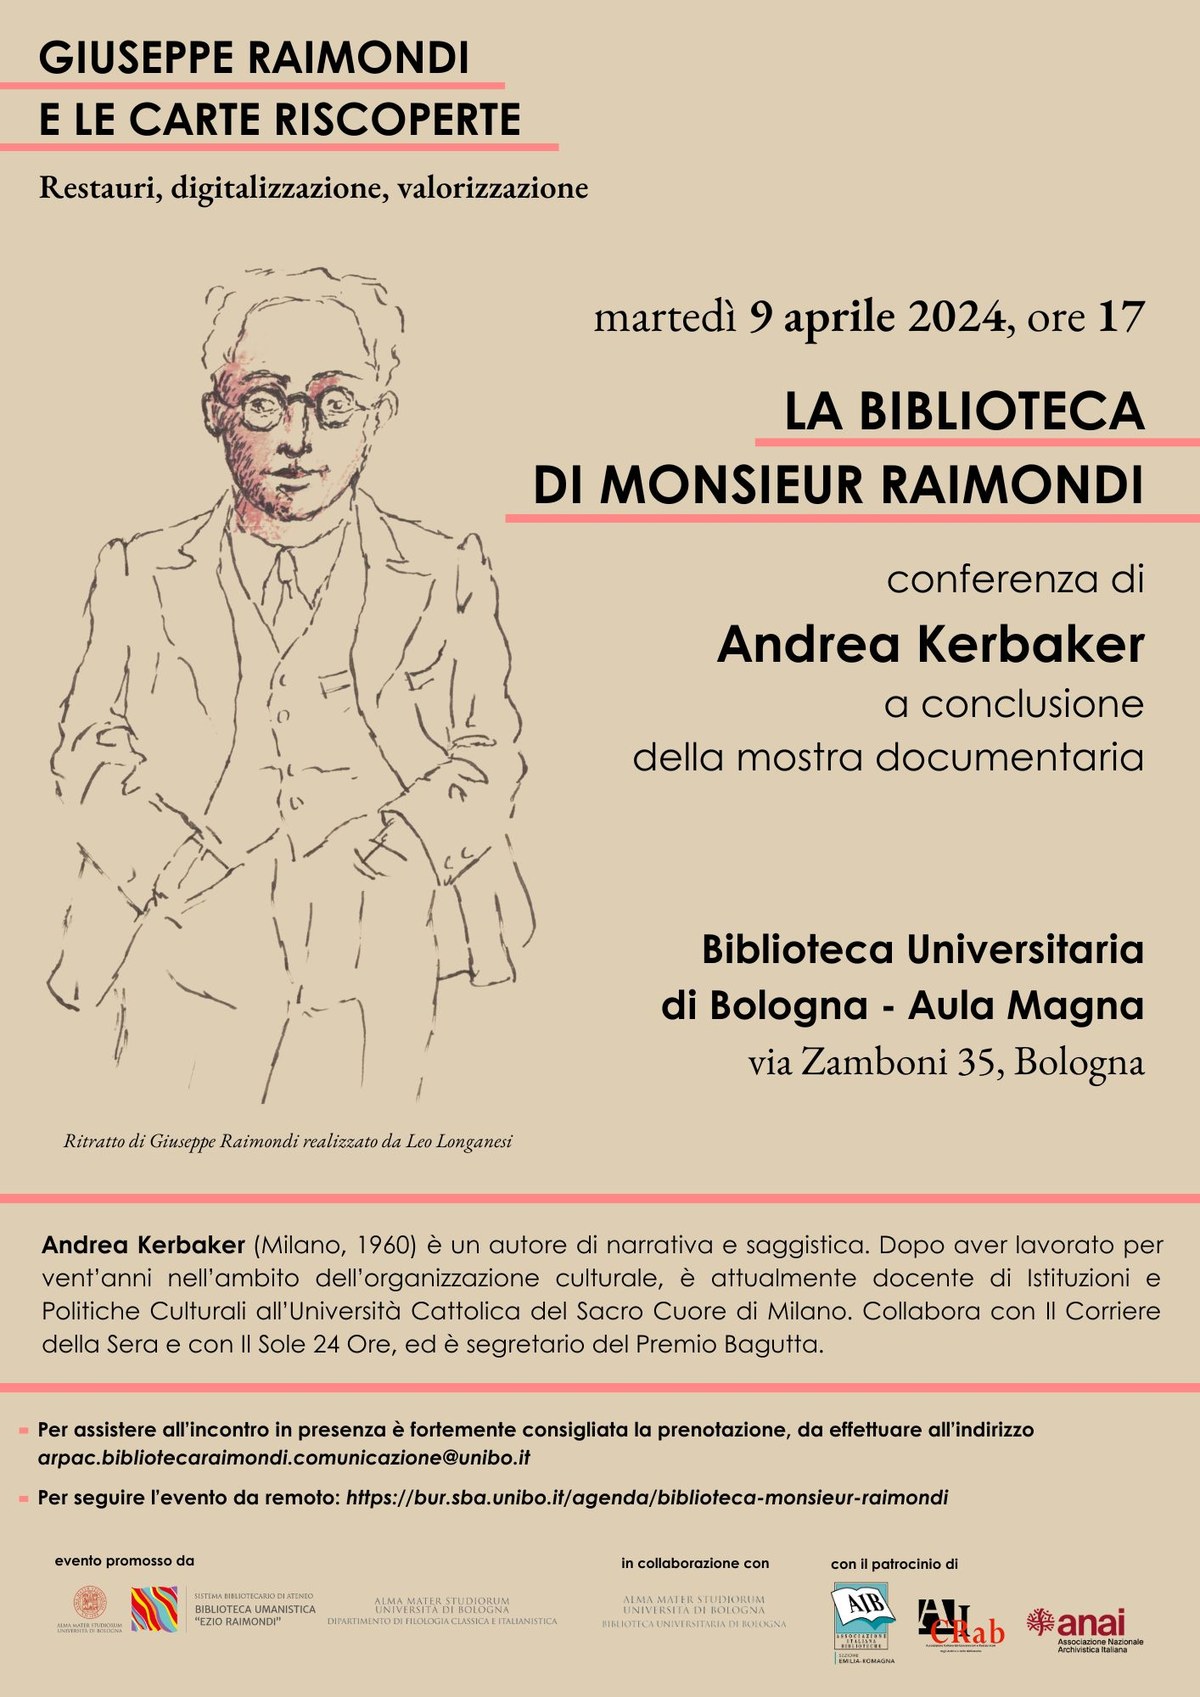 Conferenza su Giuseppe Raimondi a cura di Andrea Kerbaker, a conclusione della mostra documentaria